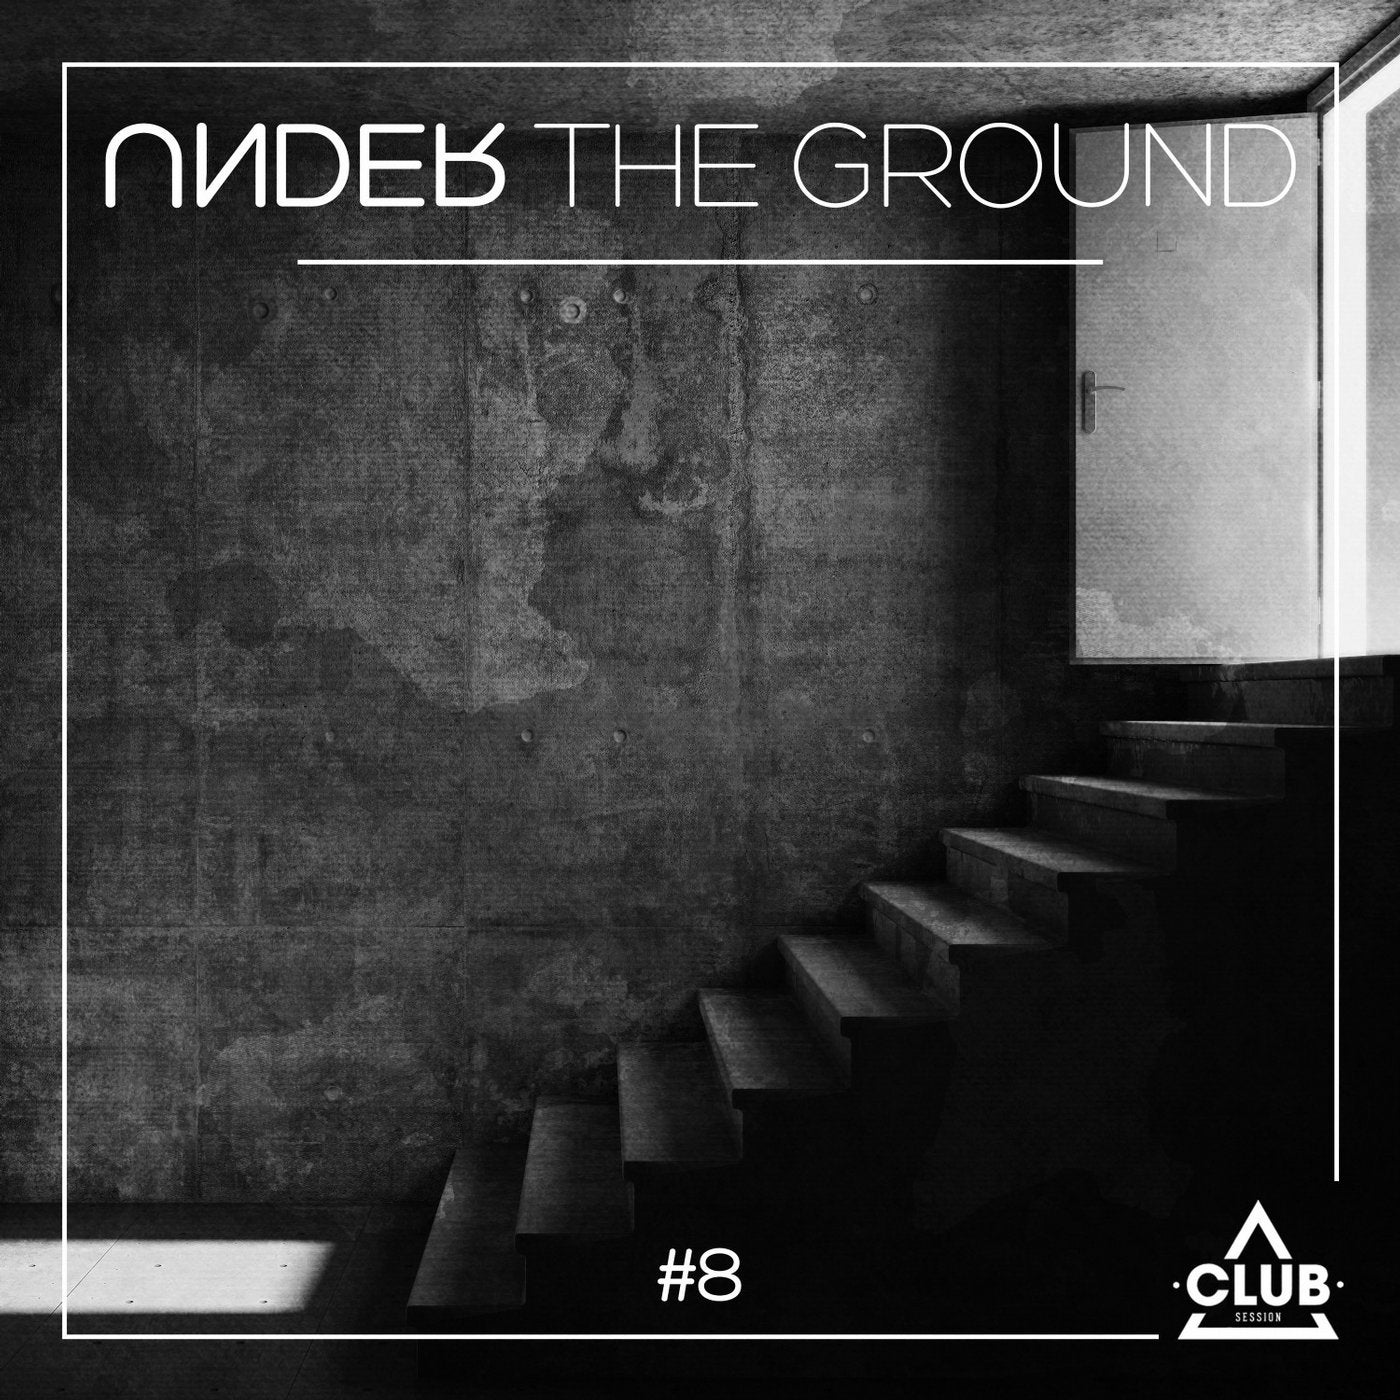 Under The Ground #8